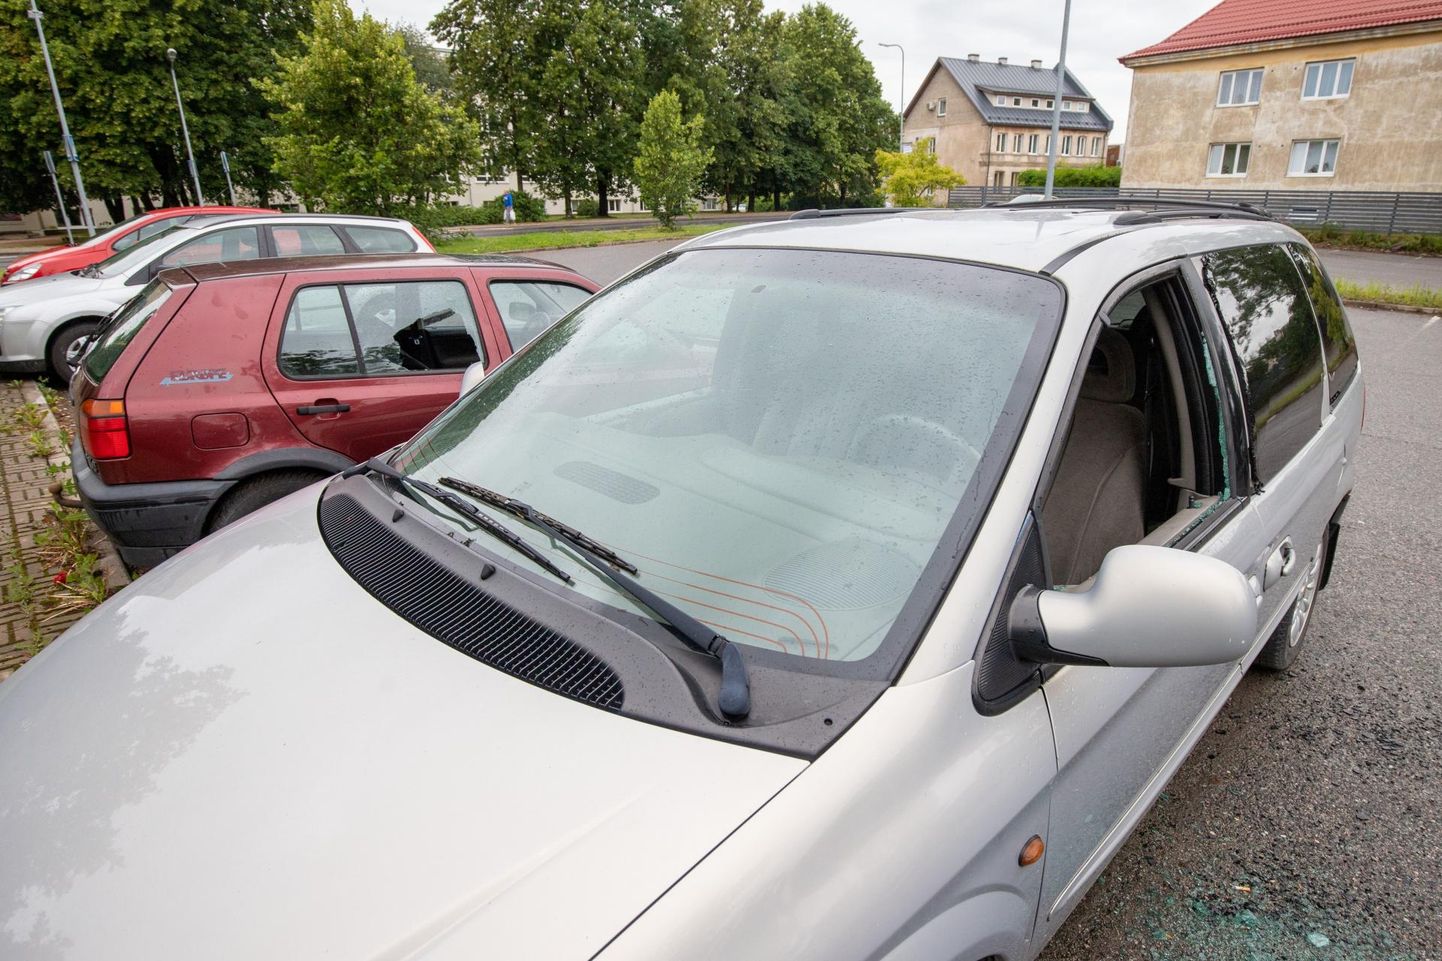 Rakveres Tallinna ja Võidu tänava ristmiku lähedal parklas on autodel aknad lõhutud.